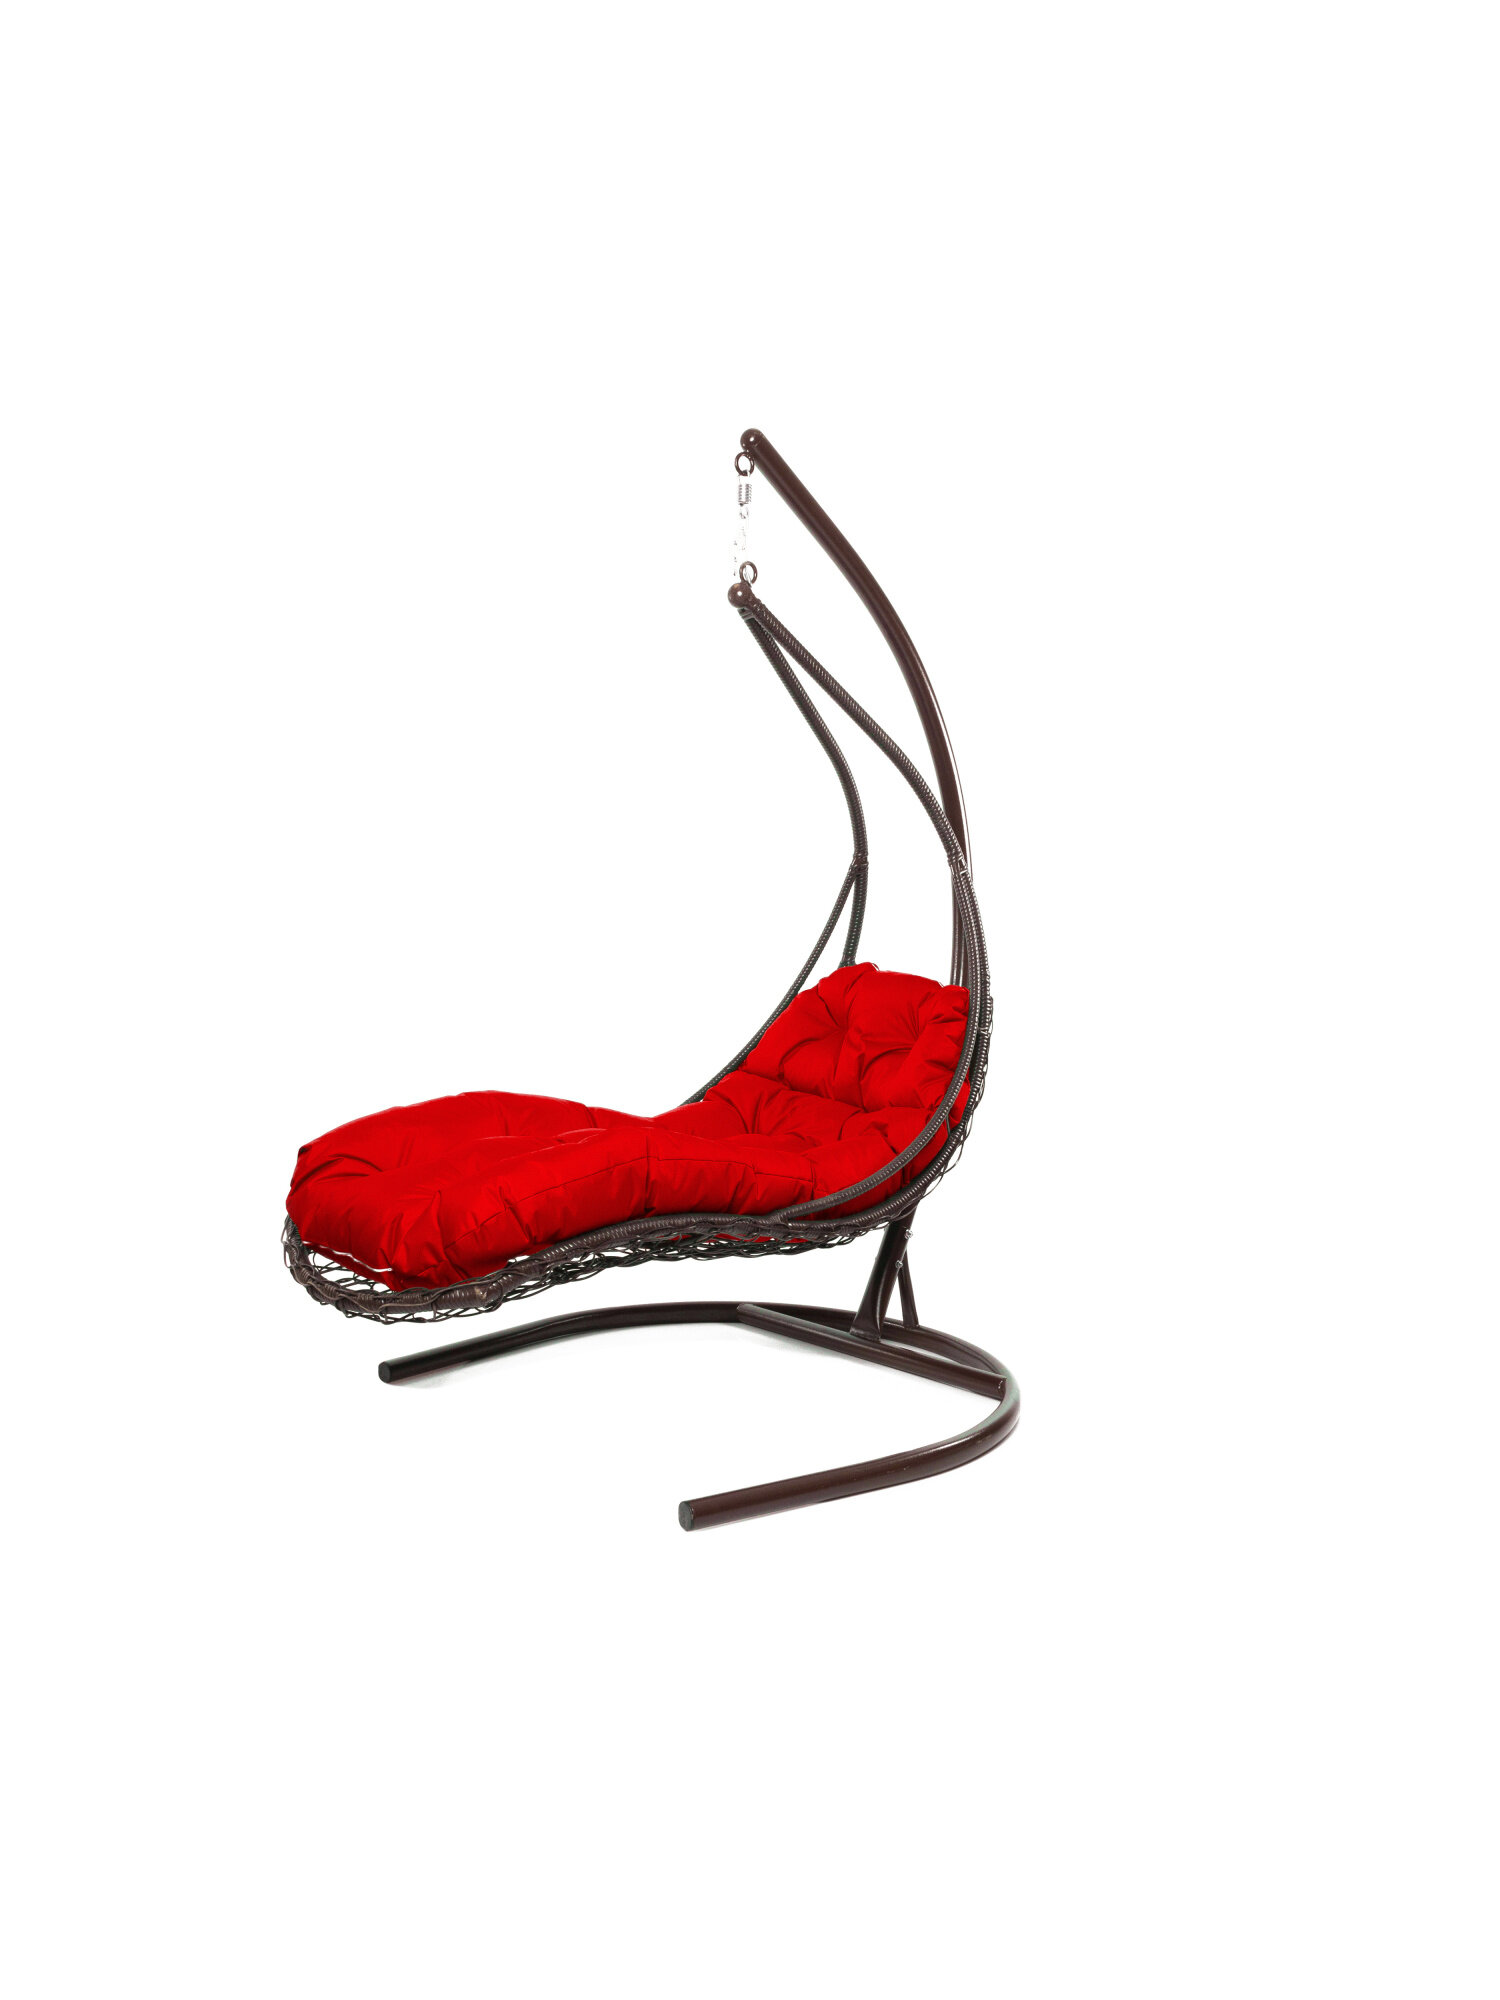 Подвесное кресло M-group лежачее с ротангом коричневое красная подушка